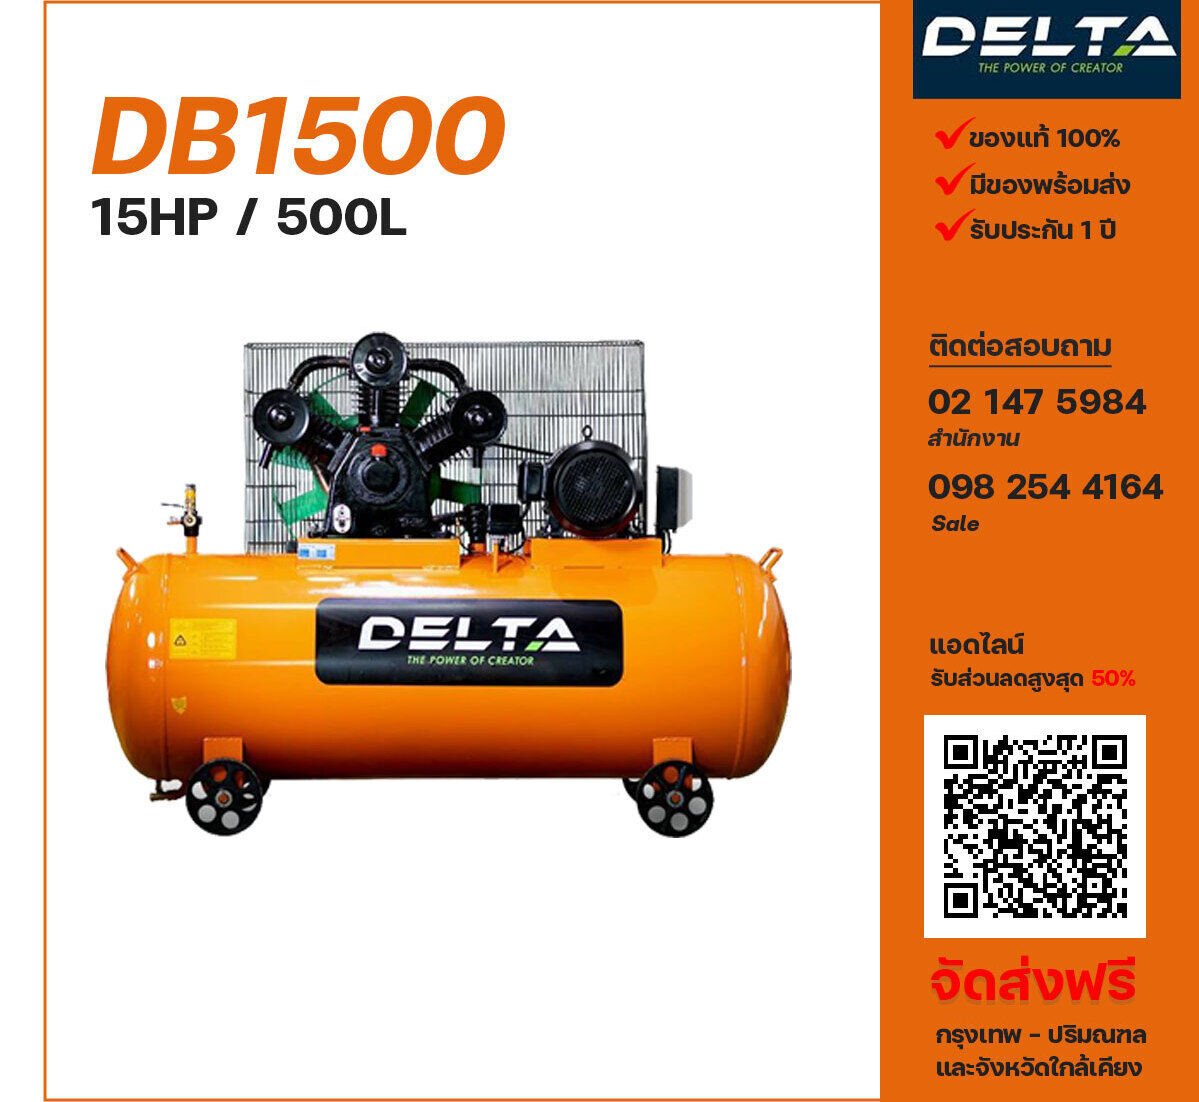 ปั๊มลมเดลต้า DELTA DB1500 380V ปั๊มลมลูกสูบ ขนาด 3 สูบ 15 แรงม้า 500 ลิตร DELTA พร้อมมอเตอร์ ไฟ 380V ส่งฟรี กรุงเทพฯ-ปริมณฑล รับประกัน 1 ปี